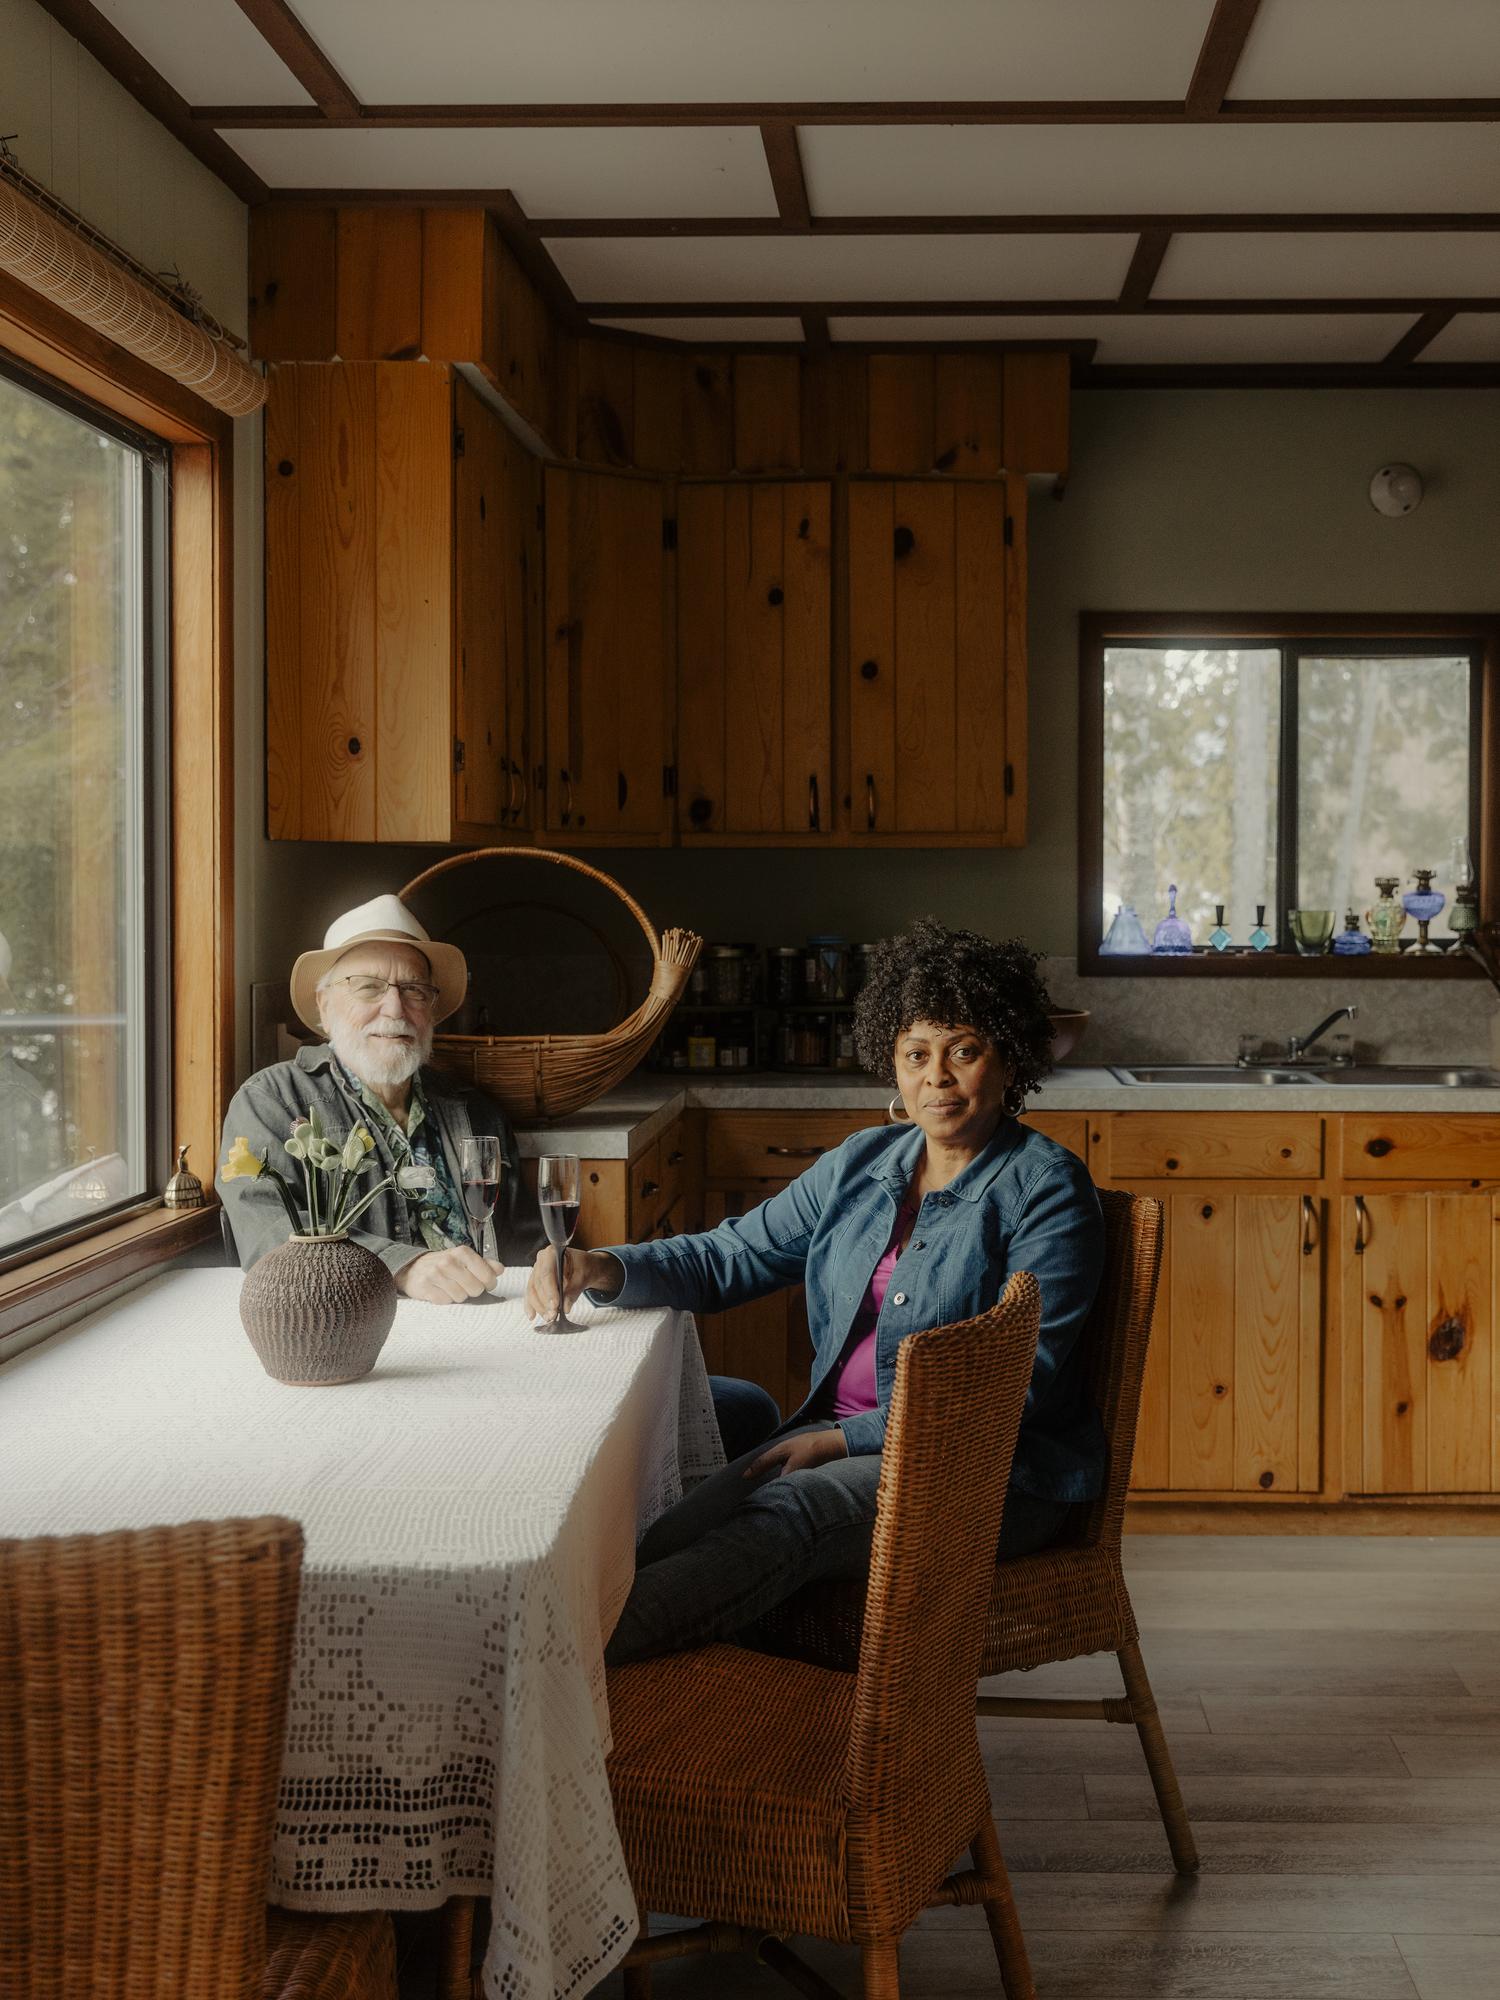 Shields 和 Askew 为其典型的加拿大小屋感到自豪。  “我们绝对不会租用我们的小屋，因为那是我们的家，”她说。